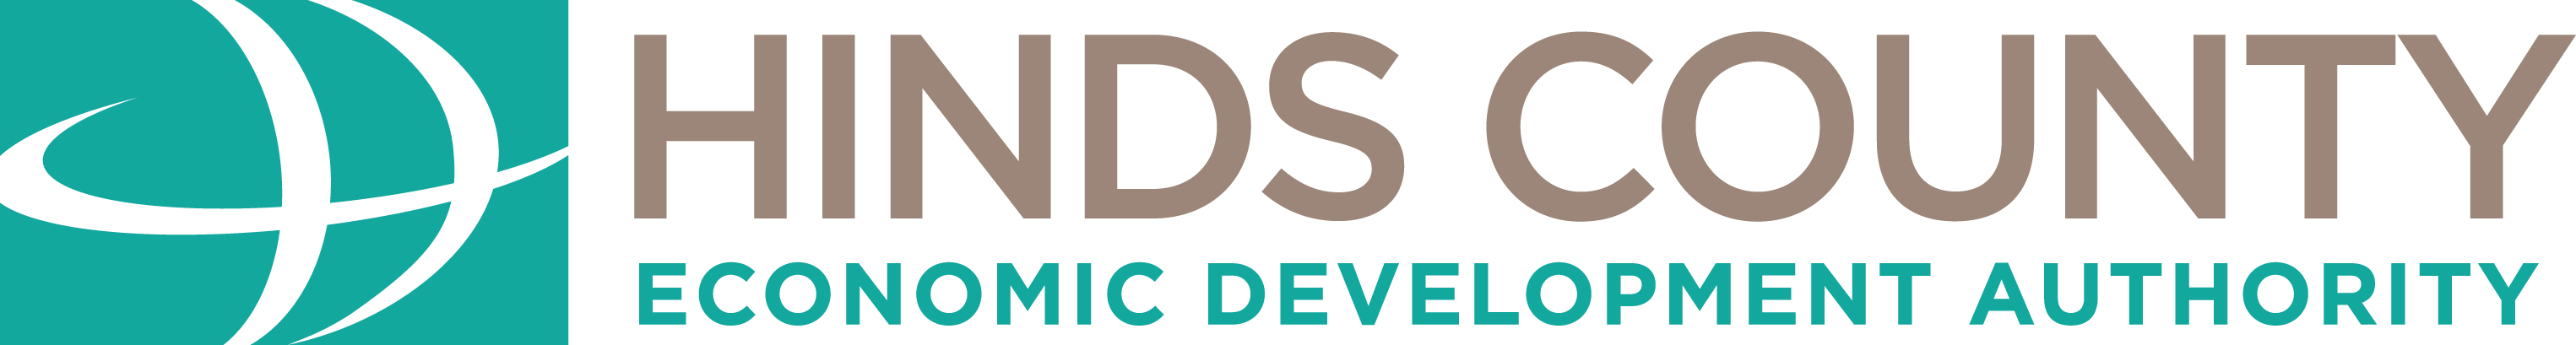 Hinds County Economic Development Authority